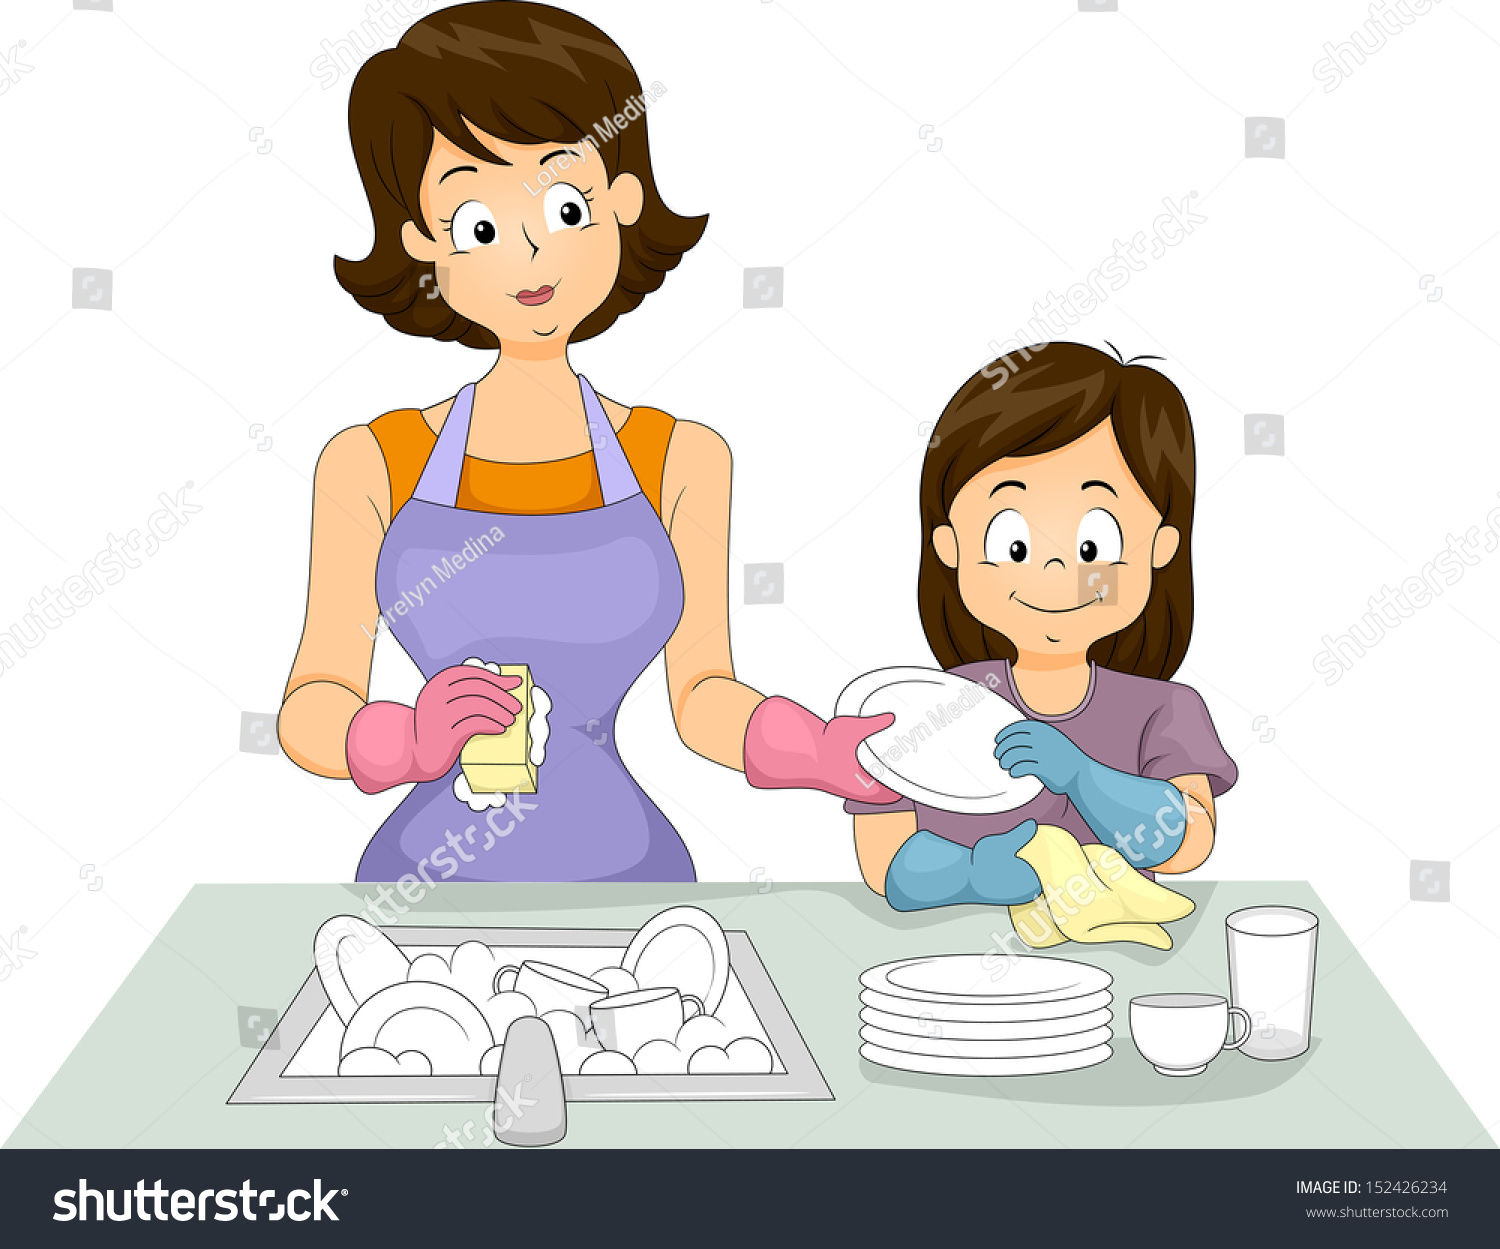 Няня моет посуду. Картина для детей мама моет посуду. Мама с дочкой моют посуду. Мама моет посуду картинки для детей. Мама вытирает посуду для детей.